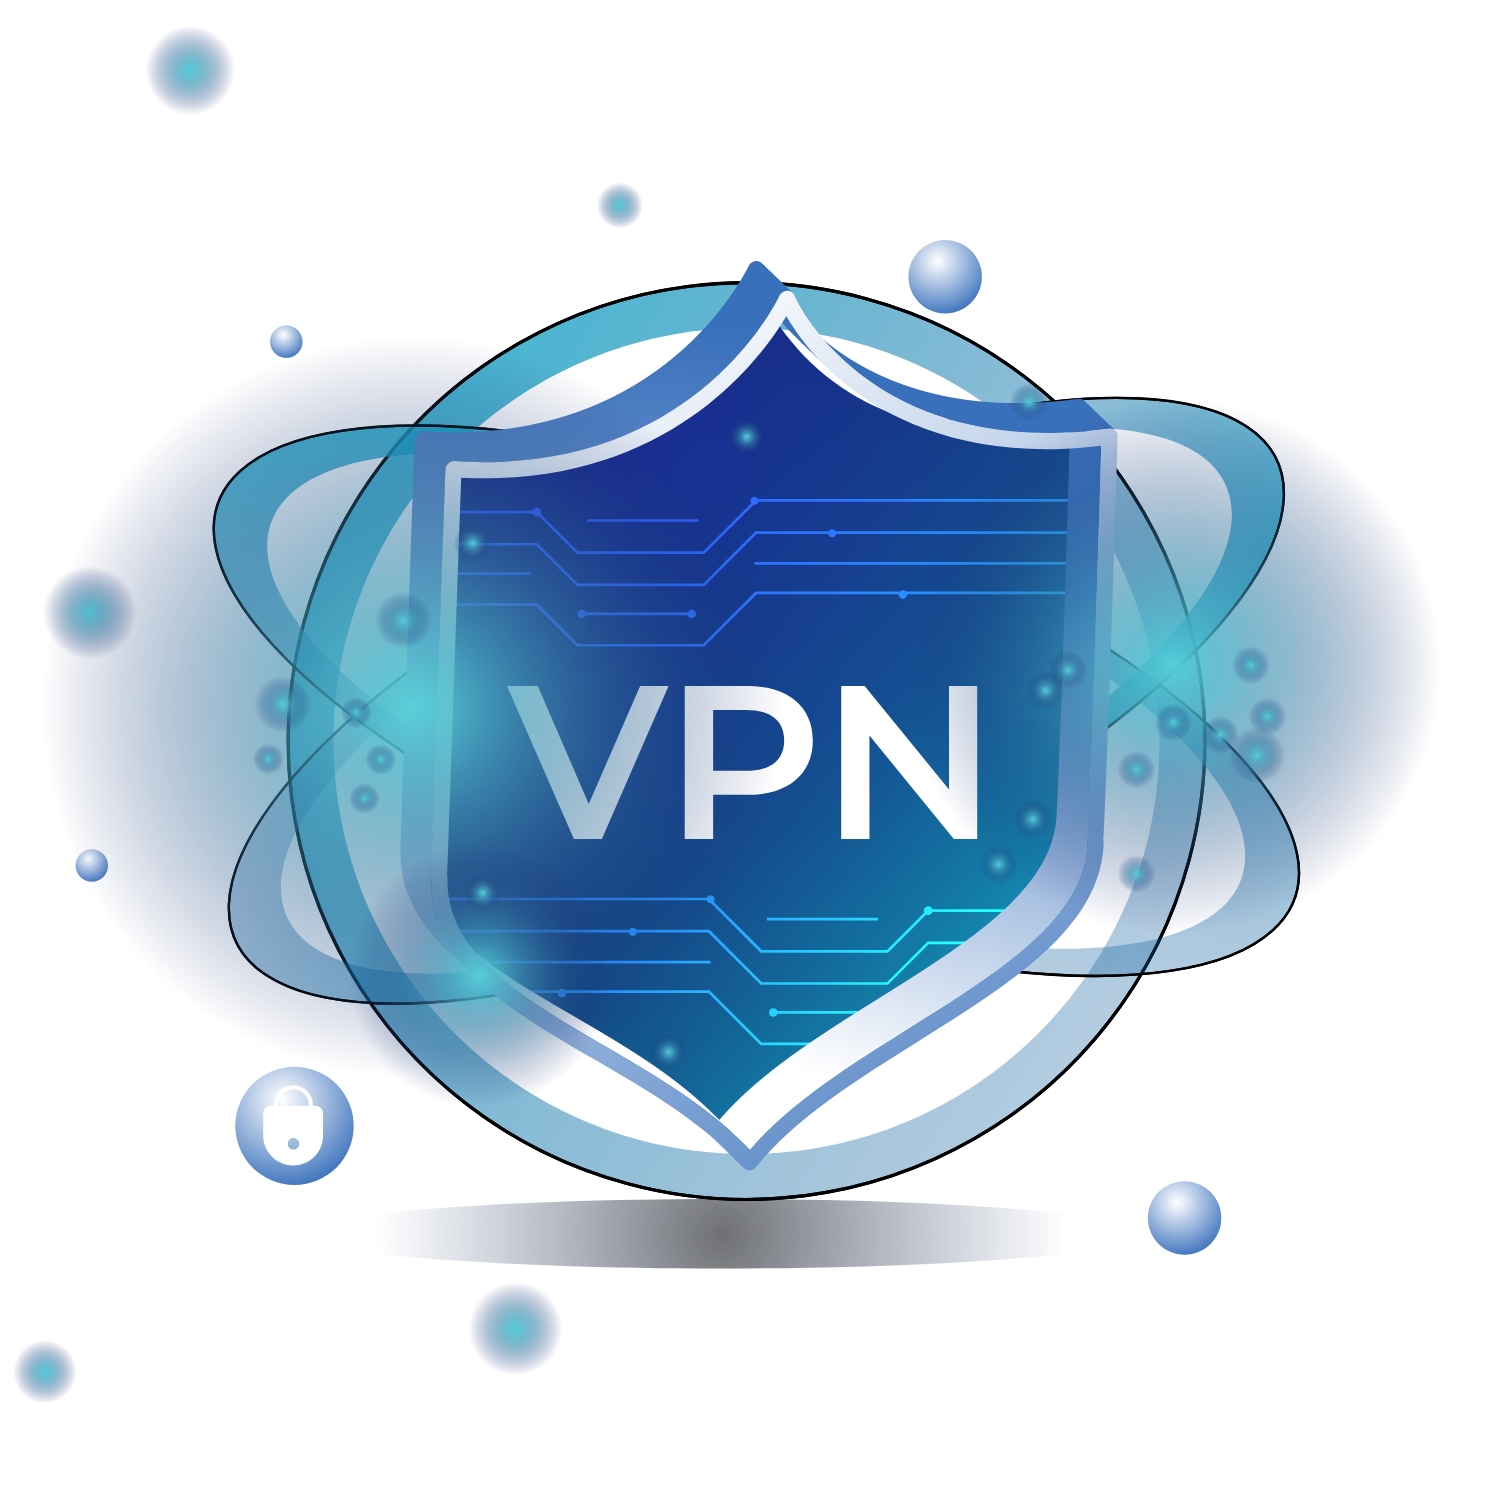 VPN logo in blue on a virtual shield